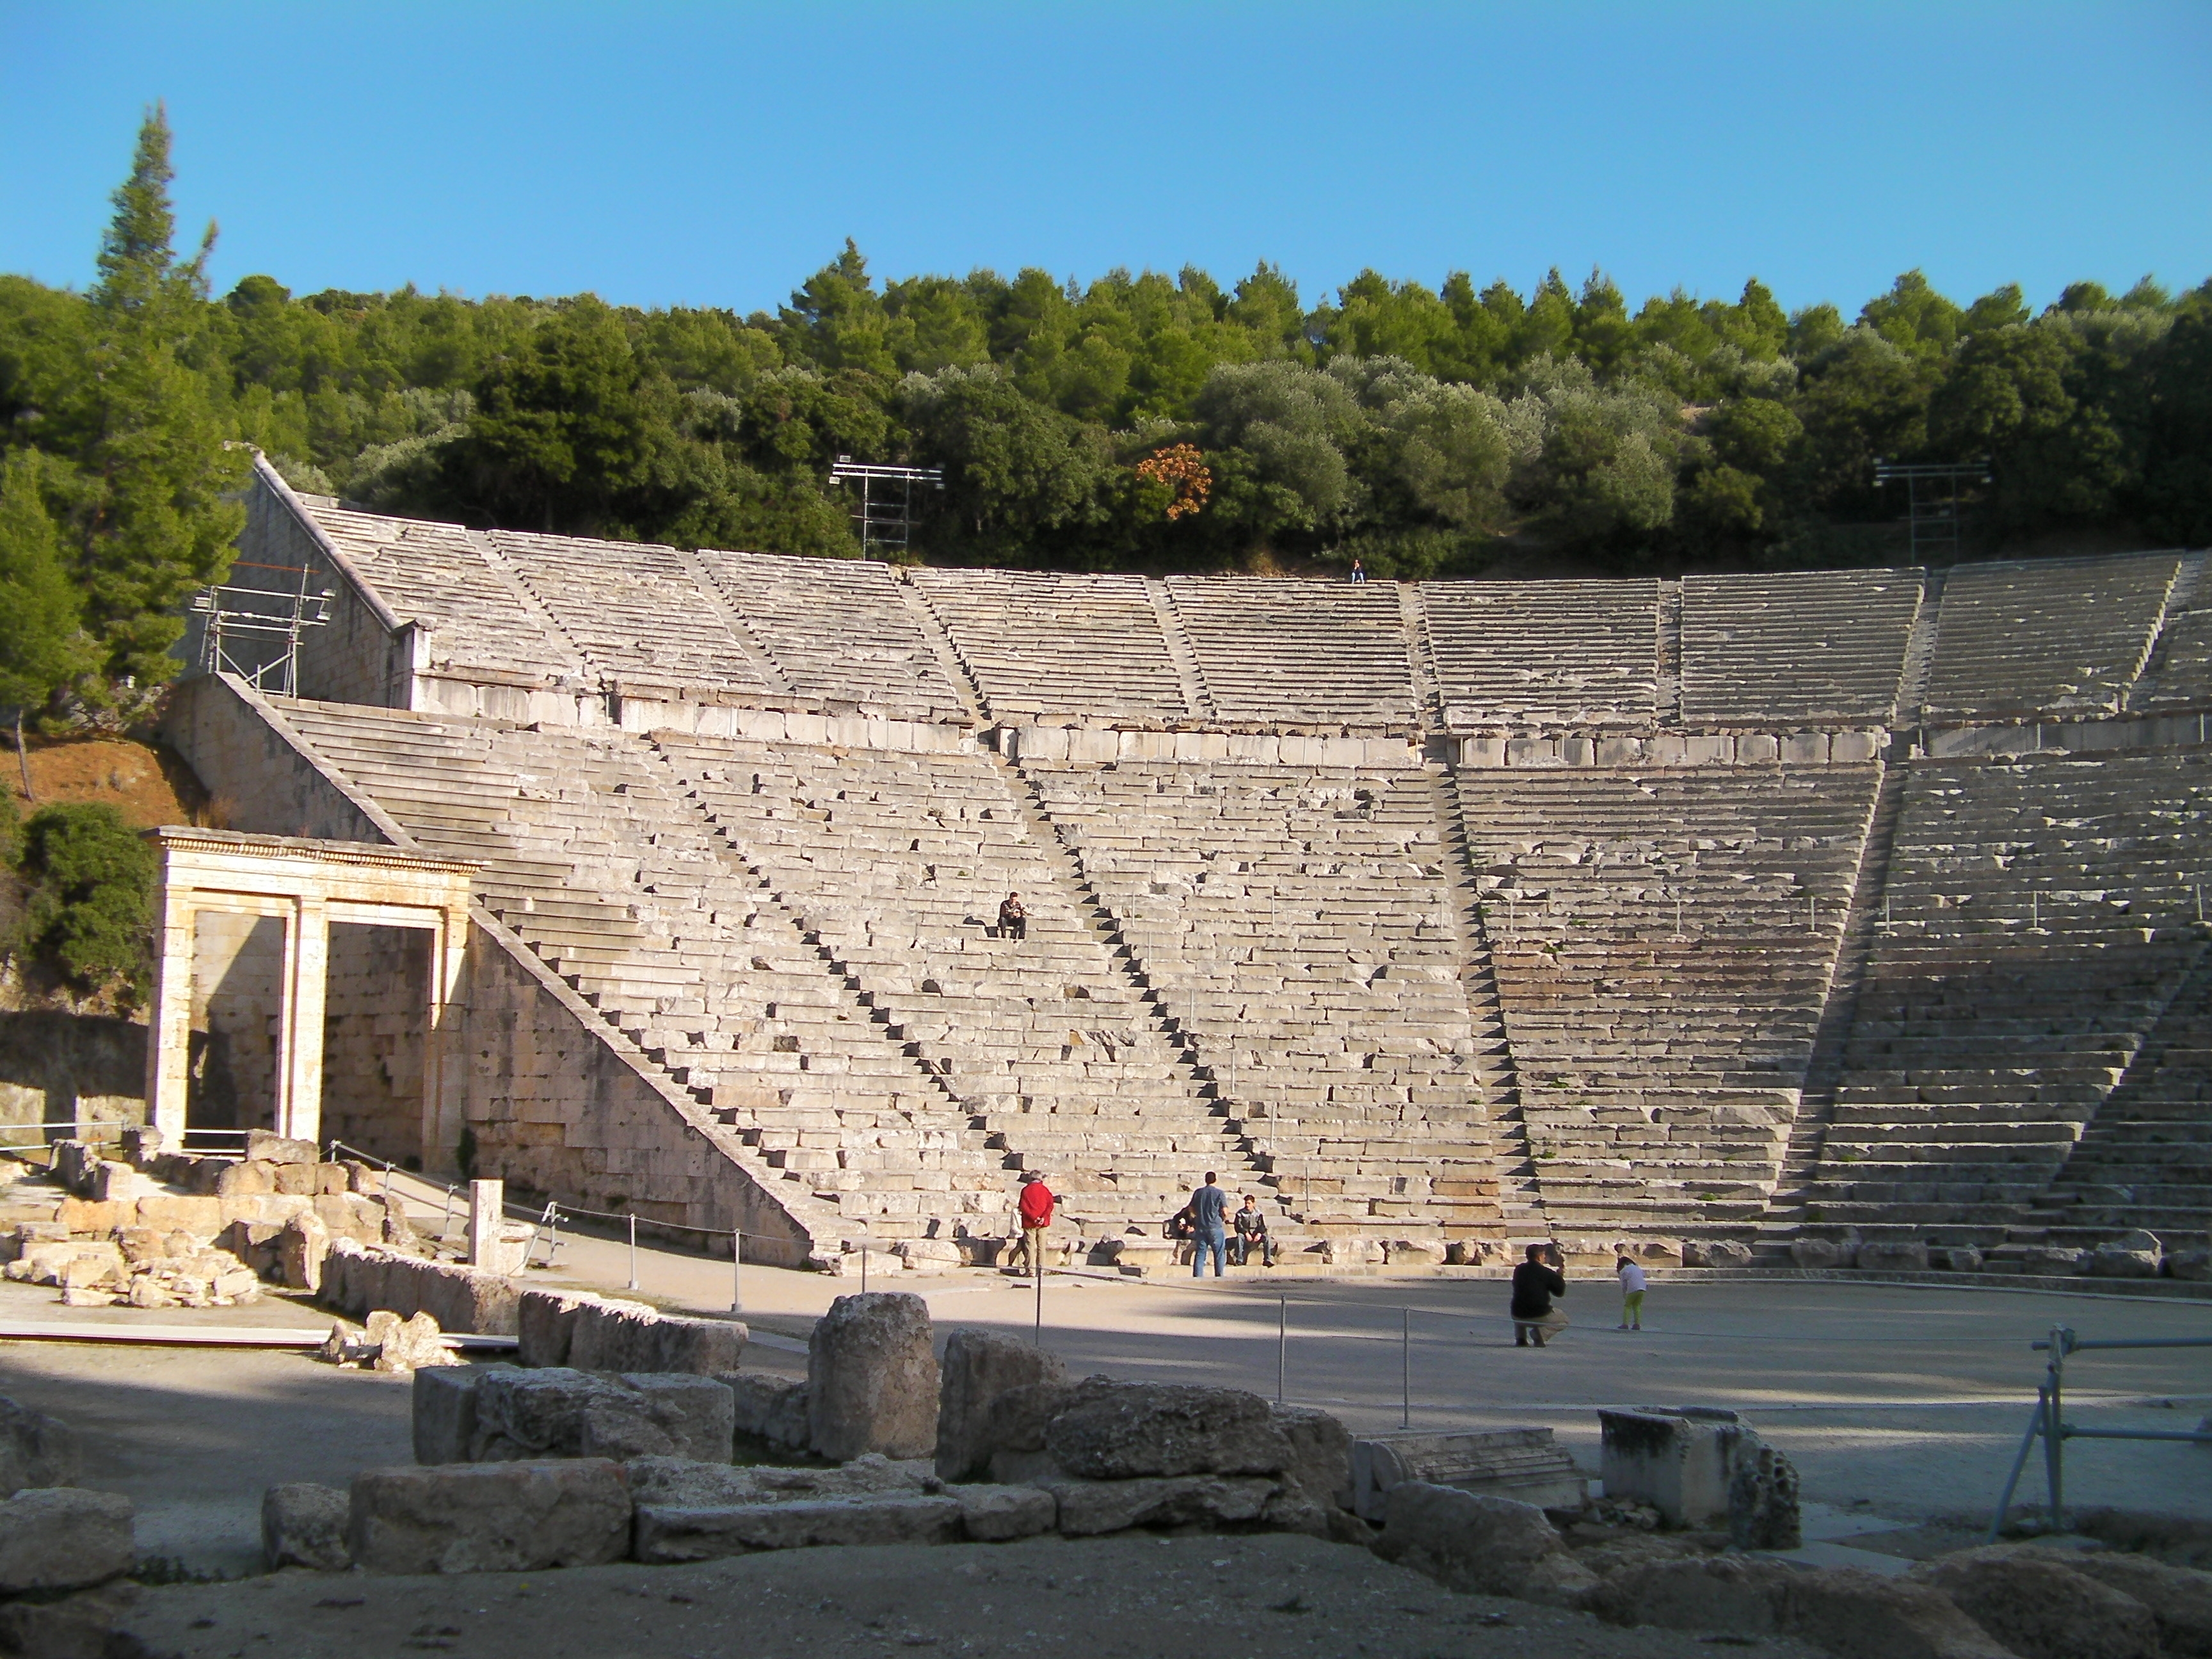 Epidaurus Theatre